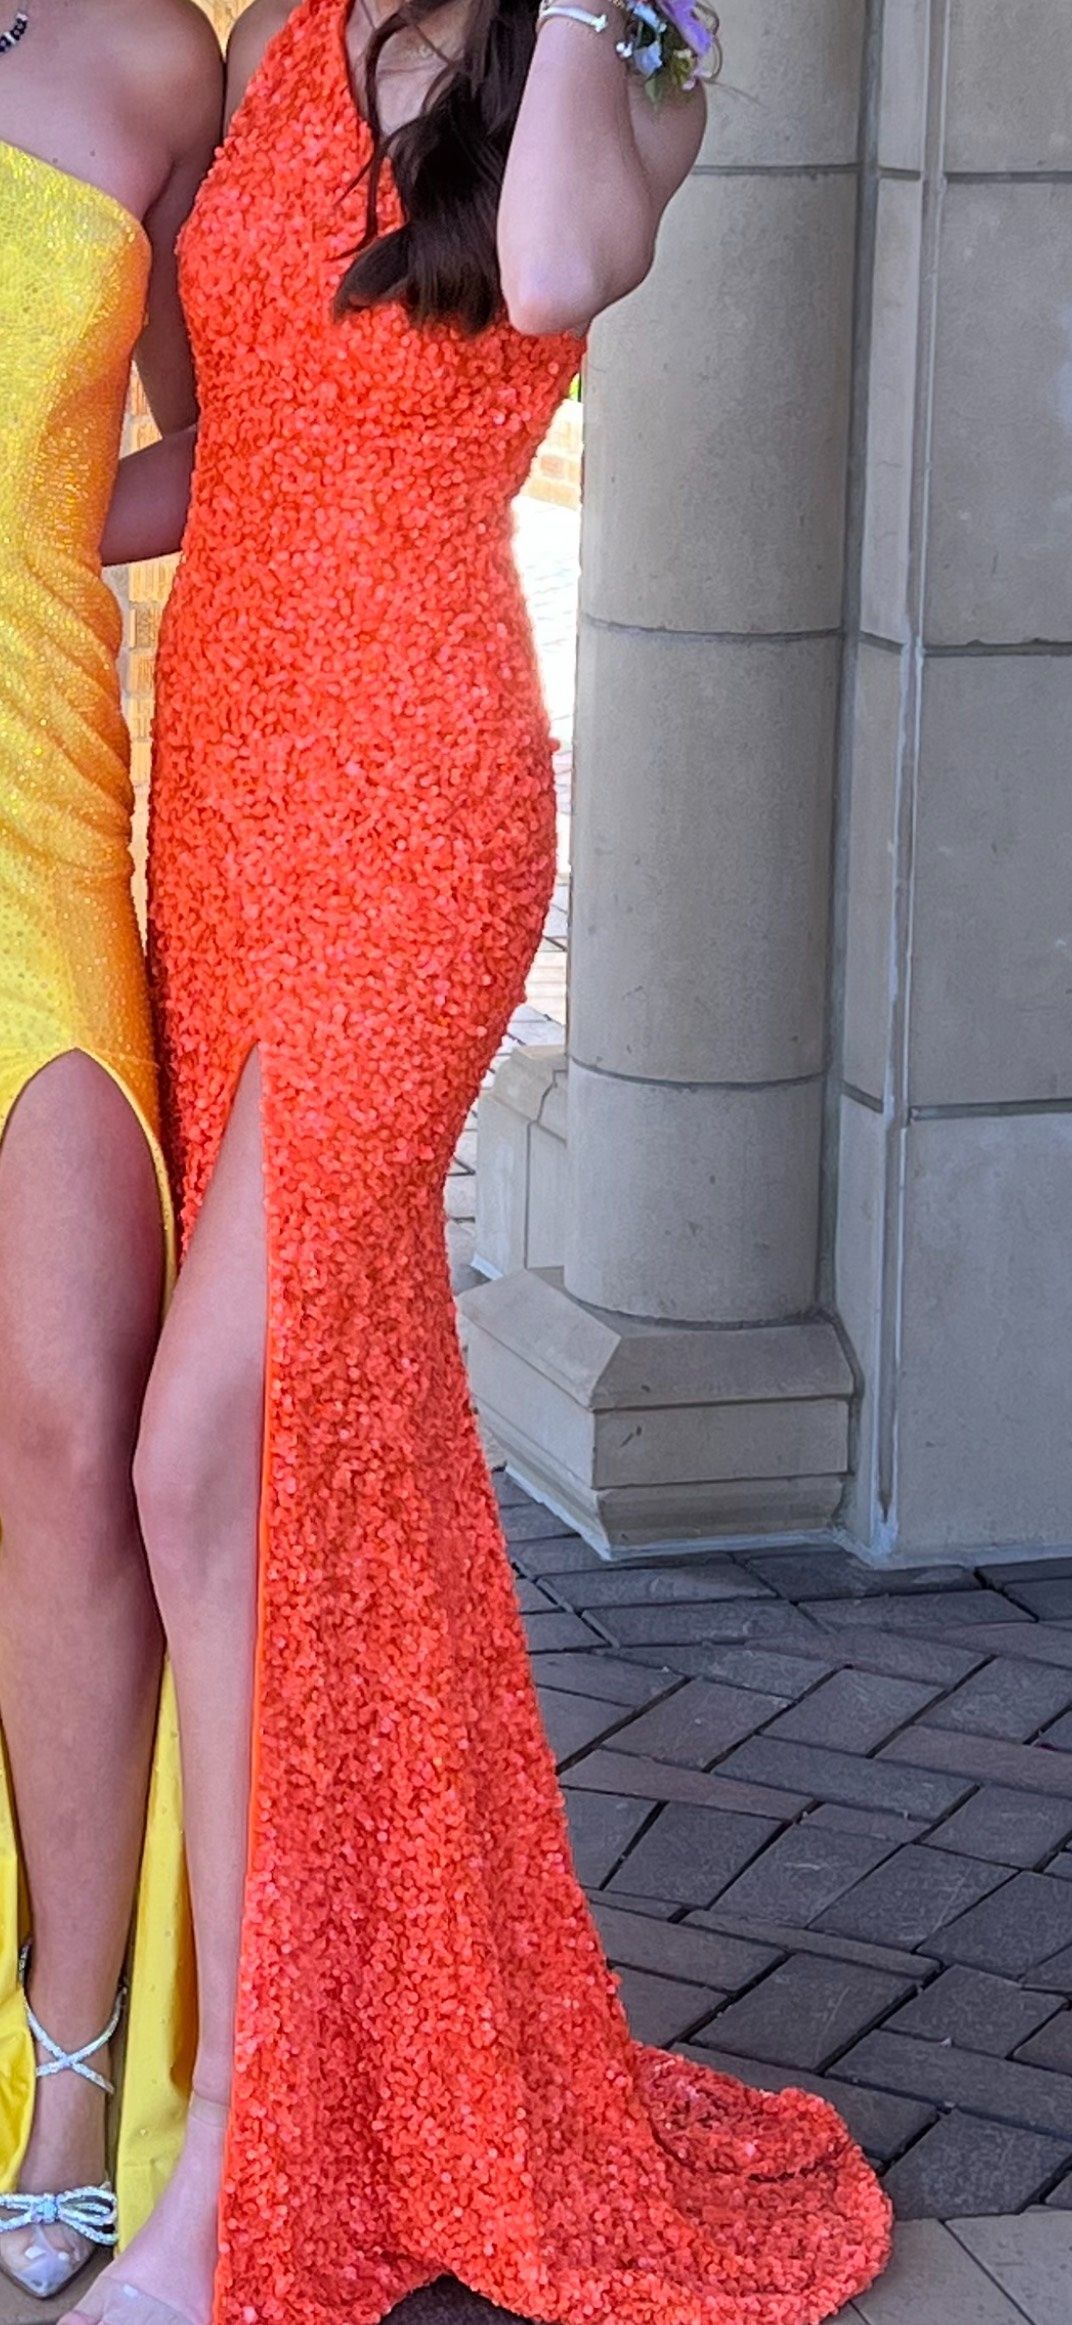 Sherri Hill Size 4 Prom One Shoulder Orange Side Slit Dress on Queenly